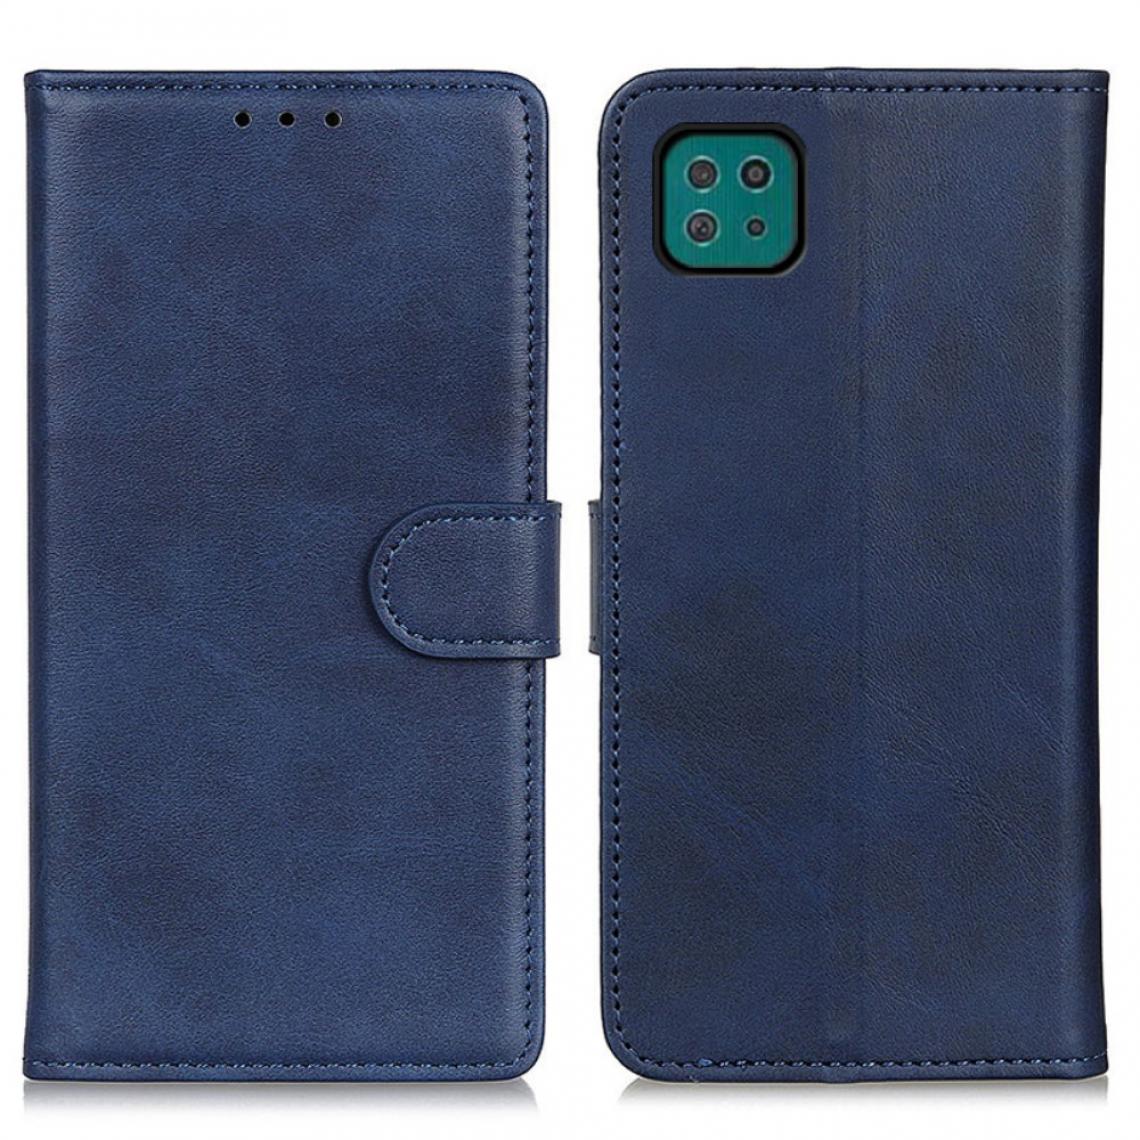 Other - Etui en PU Magnétique bleu pour votre Samsung Galaxy A22 5G (EU Version) - Coque, étui smartphone